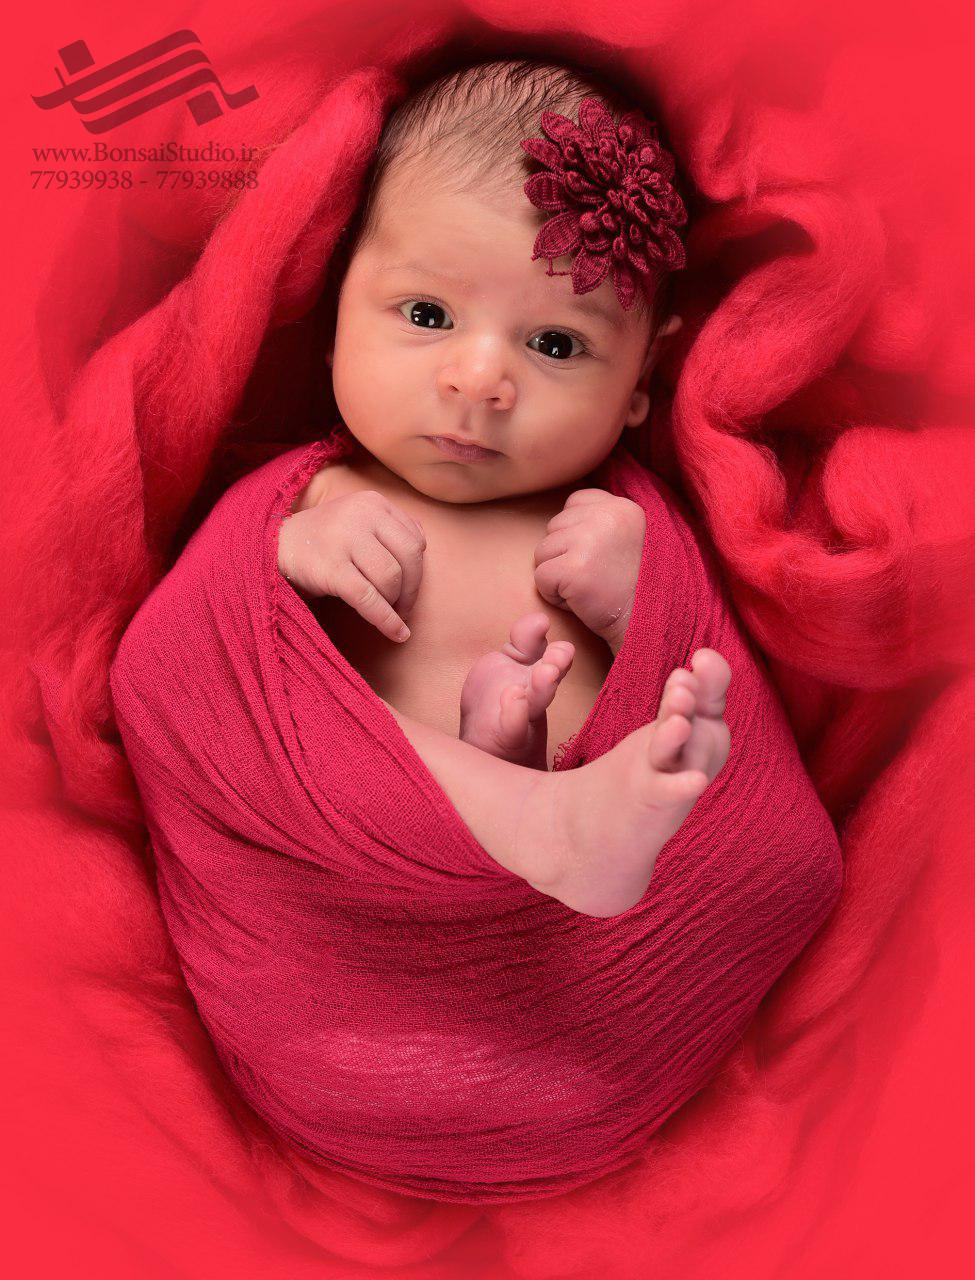 نکات عکاسی نوزاد با نور طبیعی